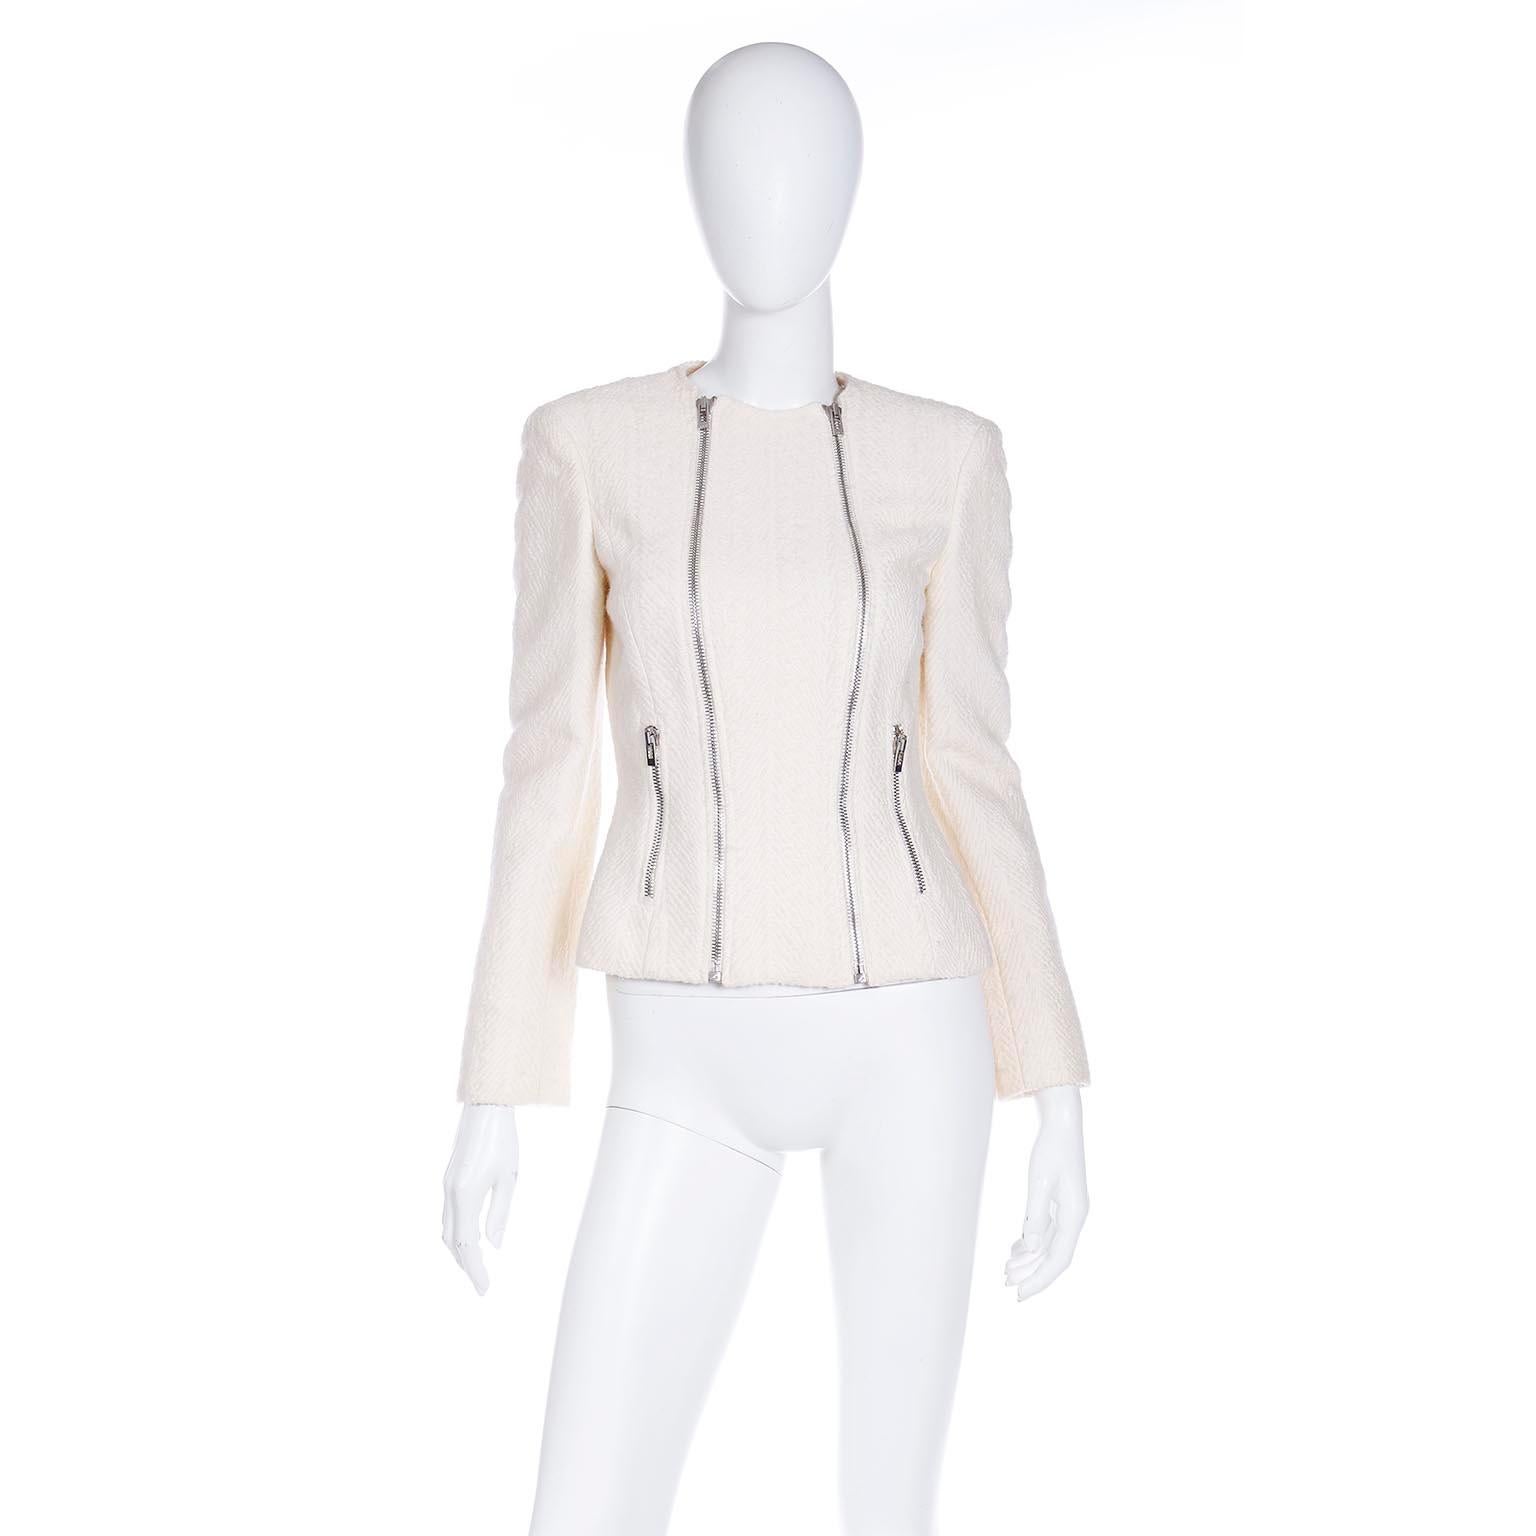 Diese vielseitige Winterjacke aus weißem Wollboucle von Gianni Versace verfügt über doppelte Reißverschlüsse an der Vorderseite, die dem Stück eine Reihe von Optionen für verschiedene Looks verleihen, da beide Reißverschlüsse sowohl von oben als